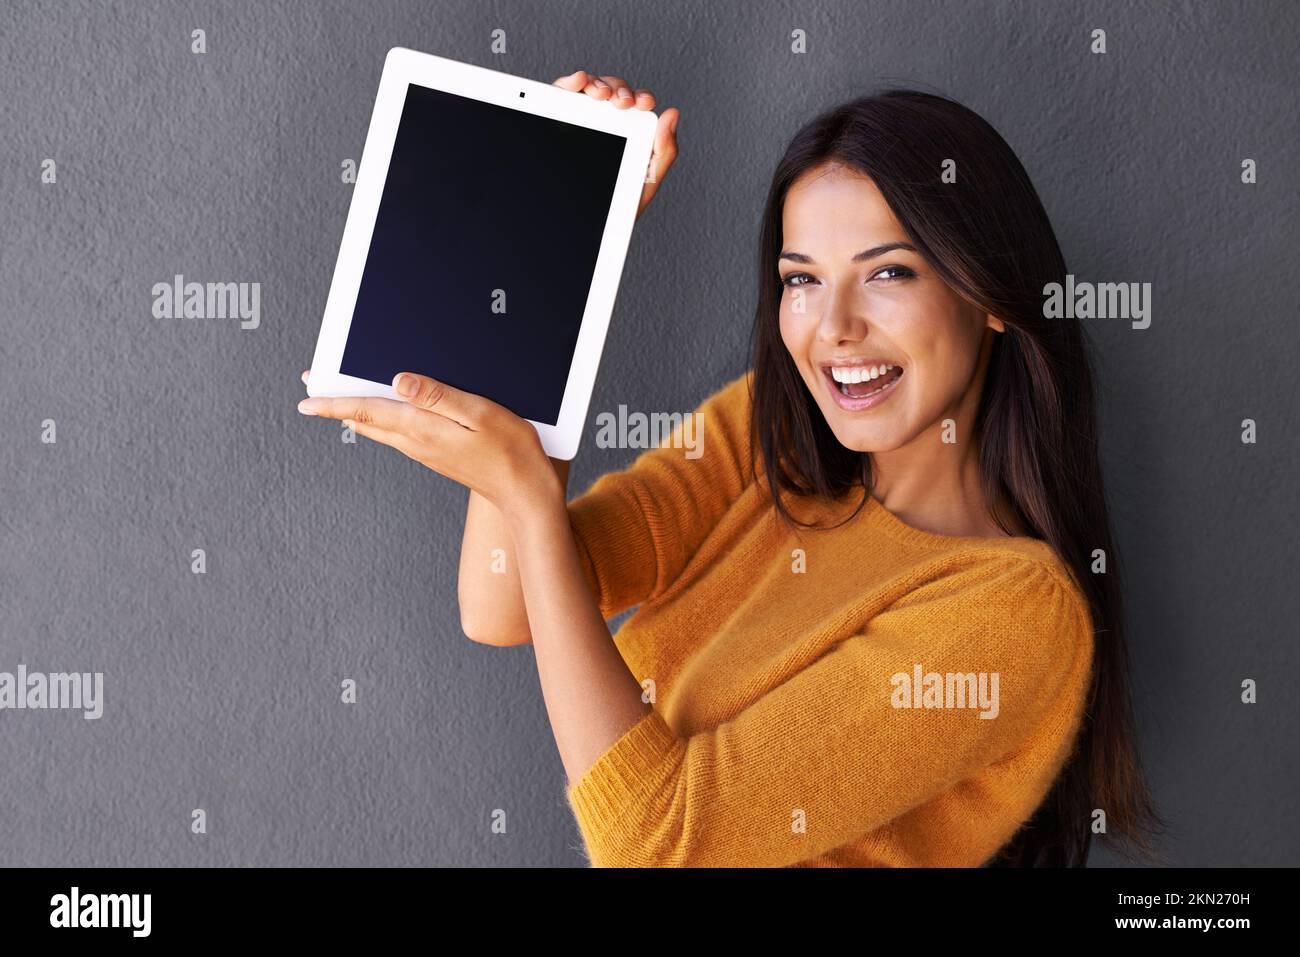 Des technologies fraîches faciles à transporter. Portrait d'une jeune femme attrayante tenant une tablette numérique avec un écran vierge. Banque D'Images